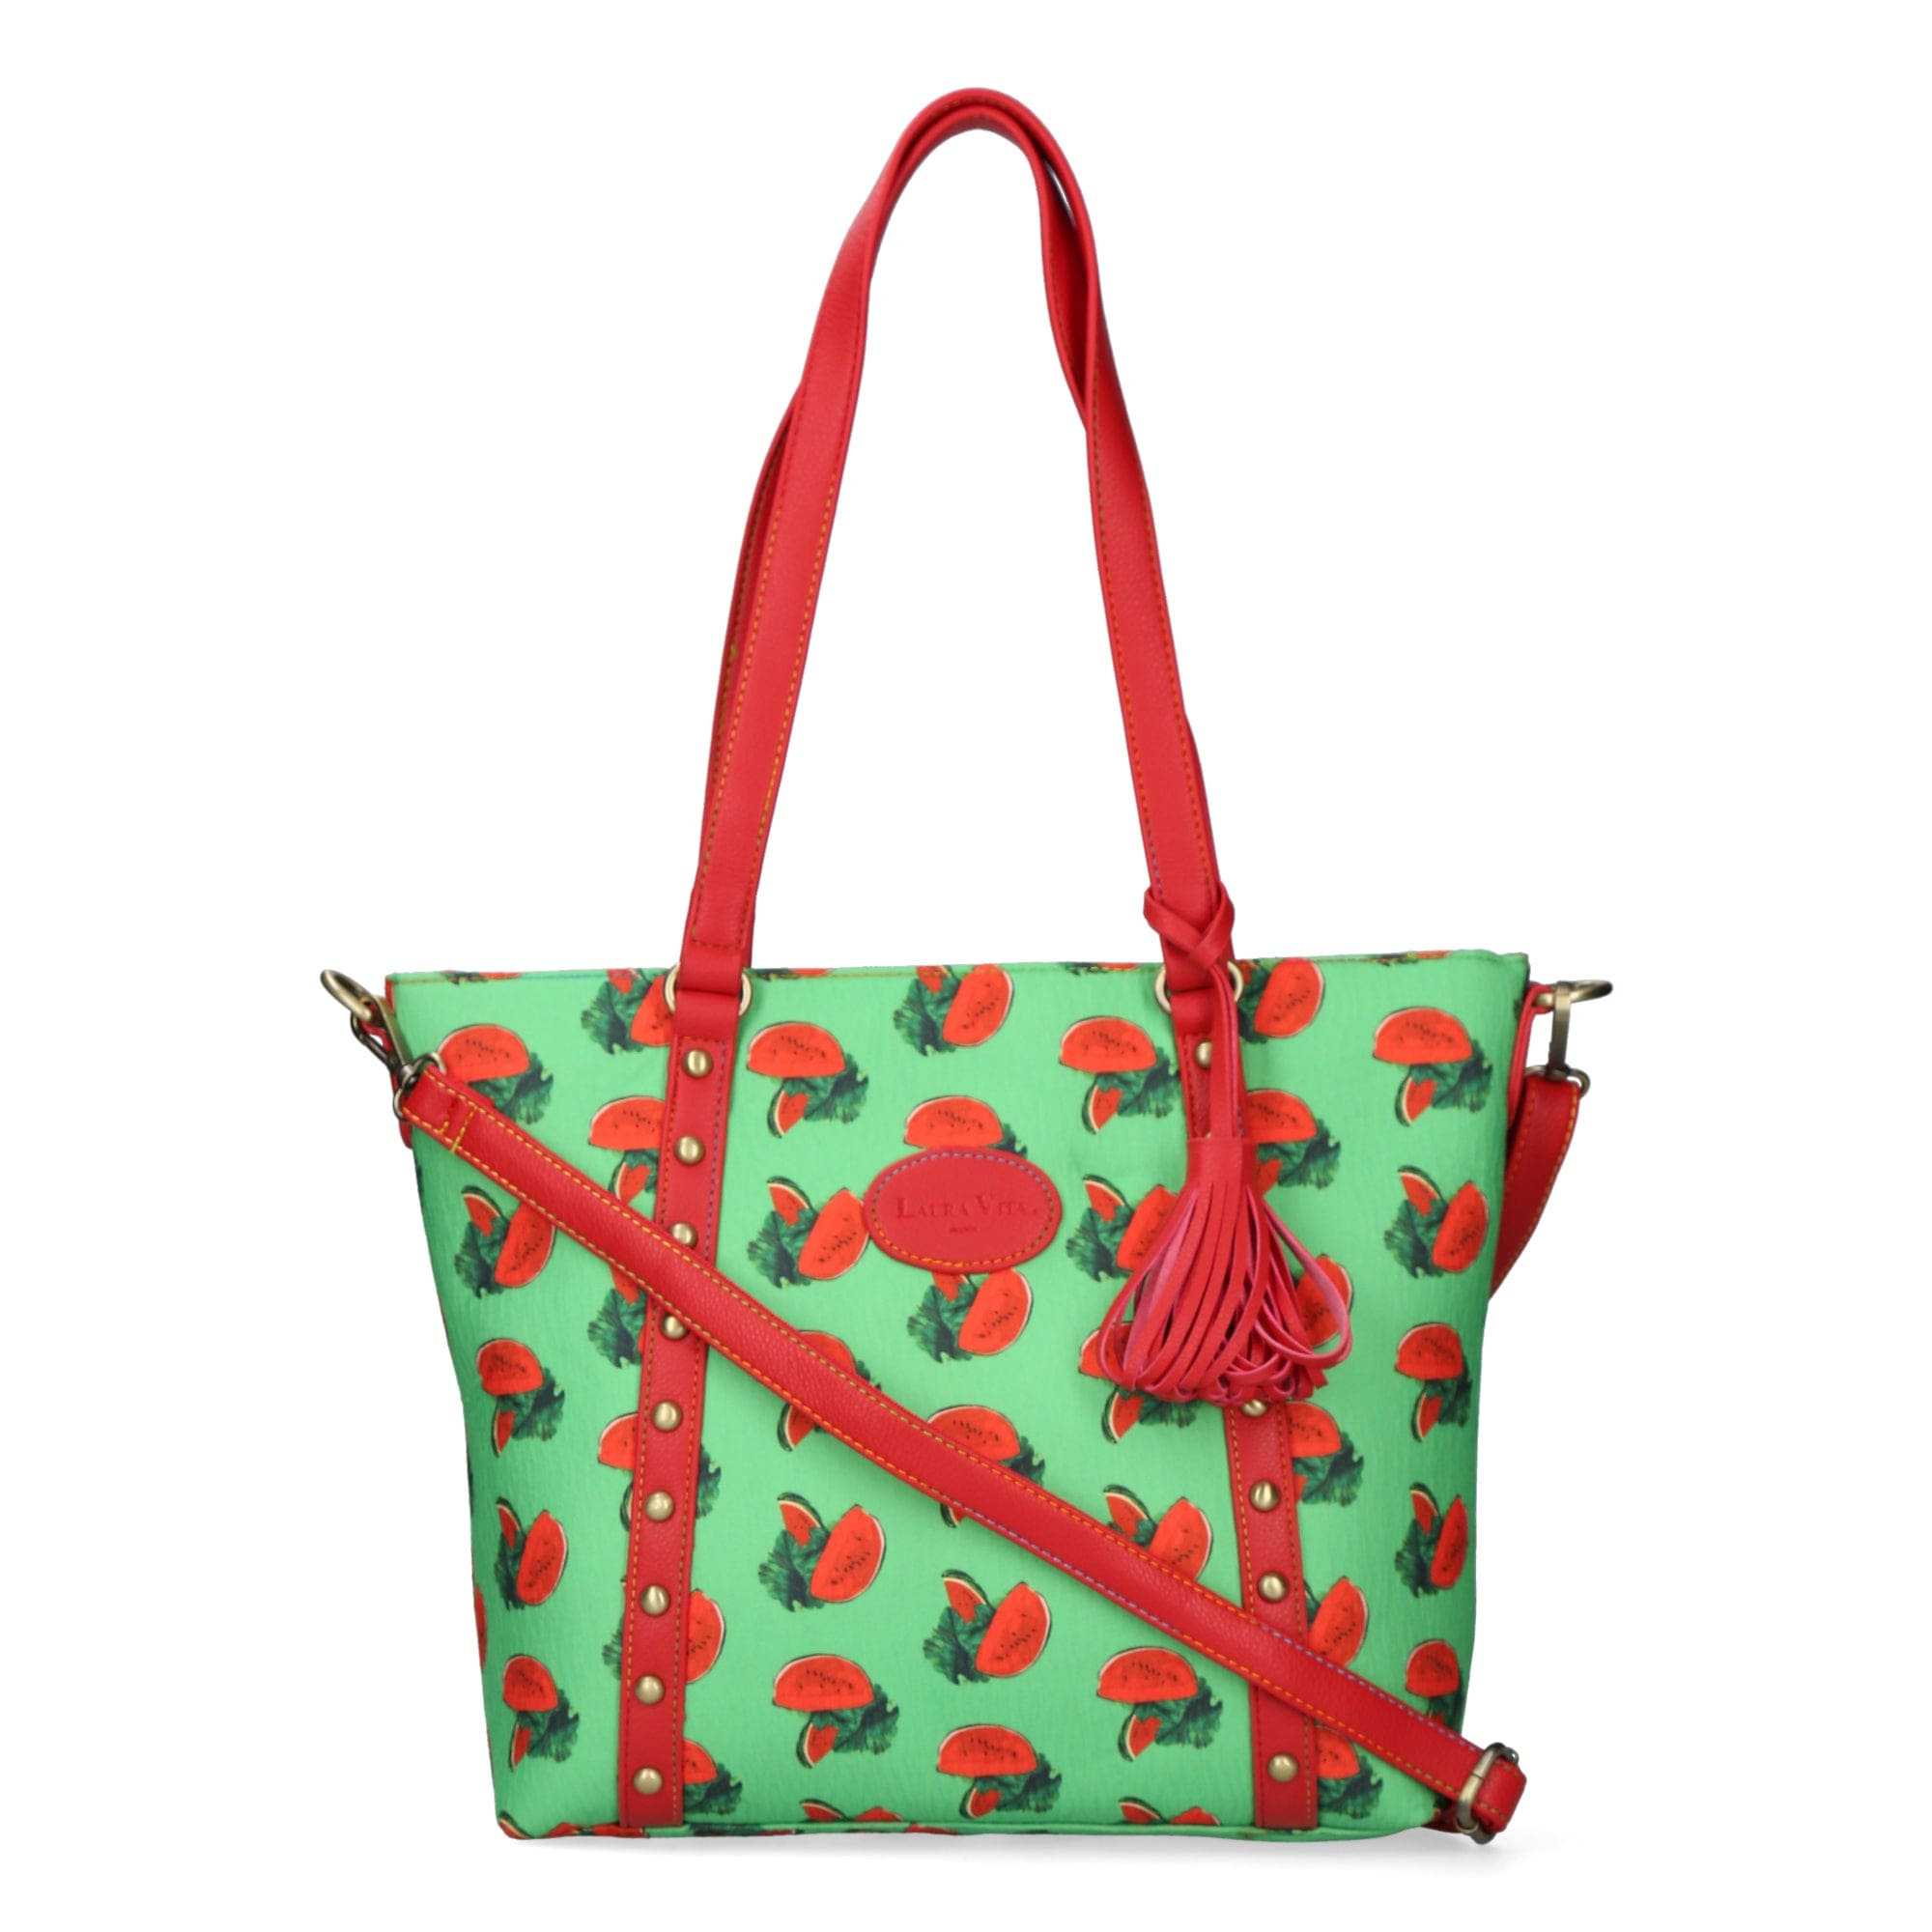 Watermelon tote bag - Green - Bag